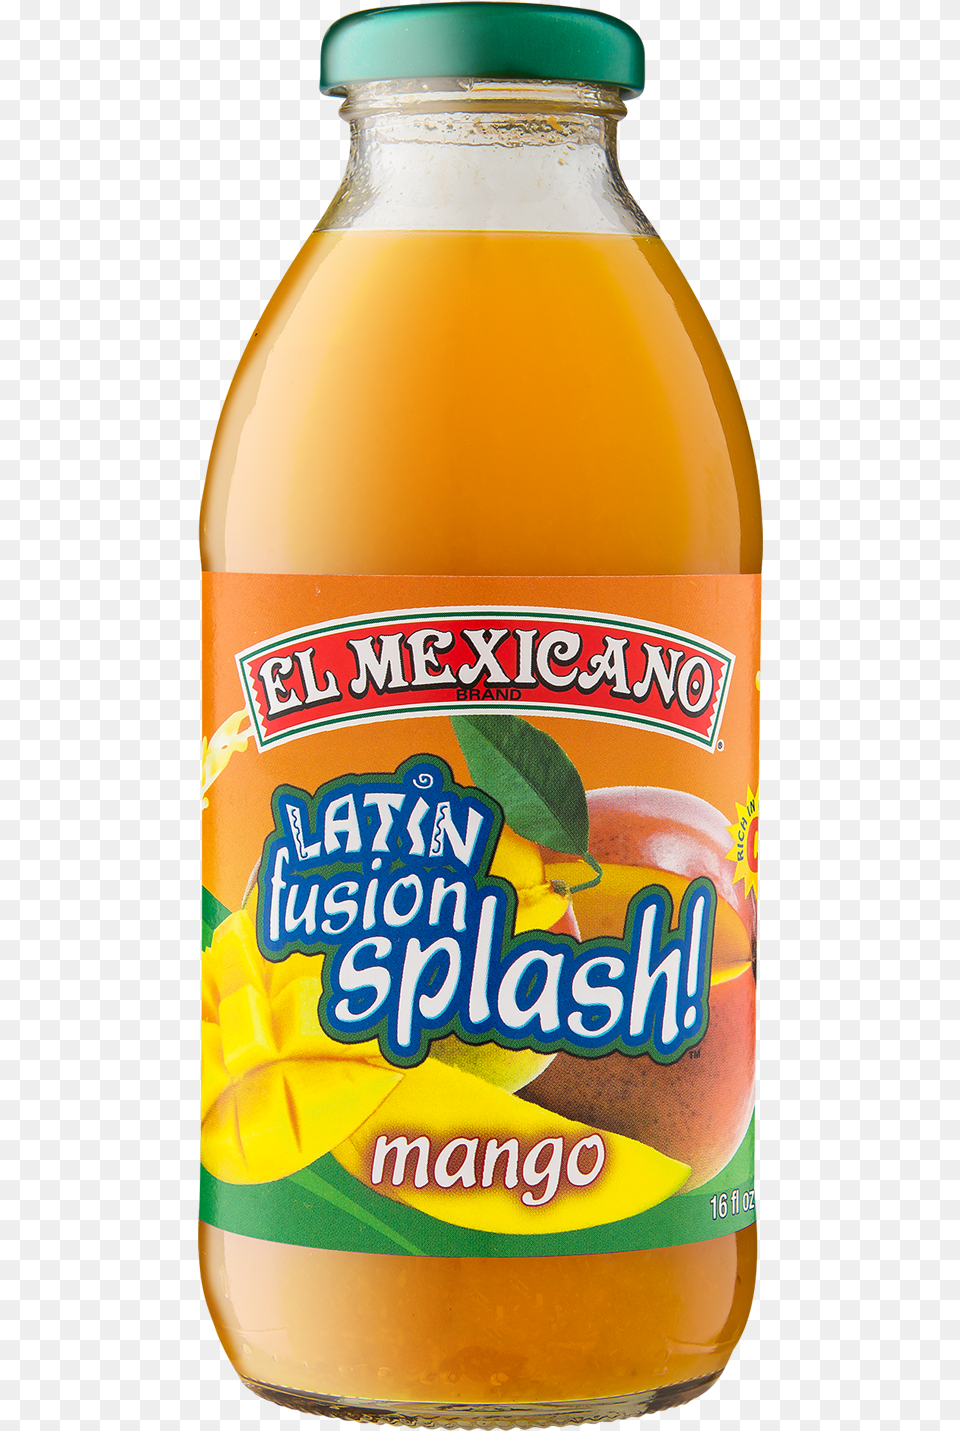 El Mexicano Mango Juice El Mexicano Latin Fusion Splash Fruit Drink Orange, Beverage, Alcohol, Beer, Orange Juice Png Image